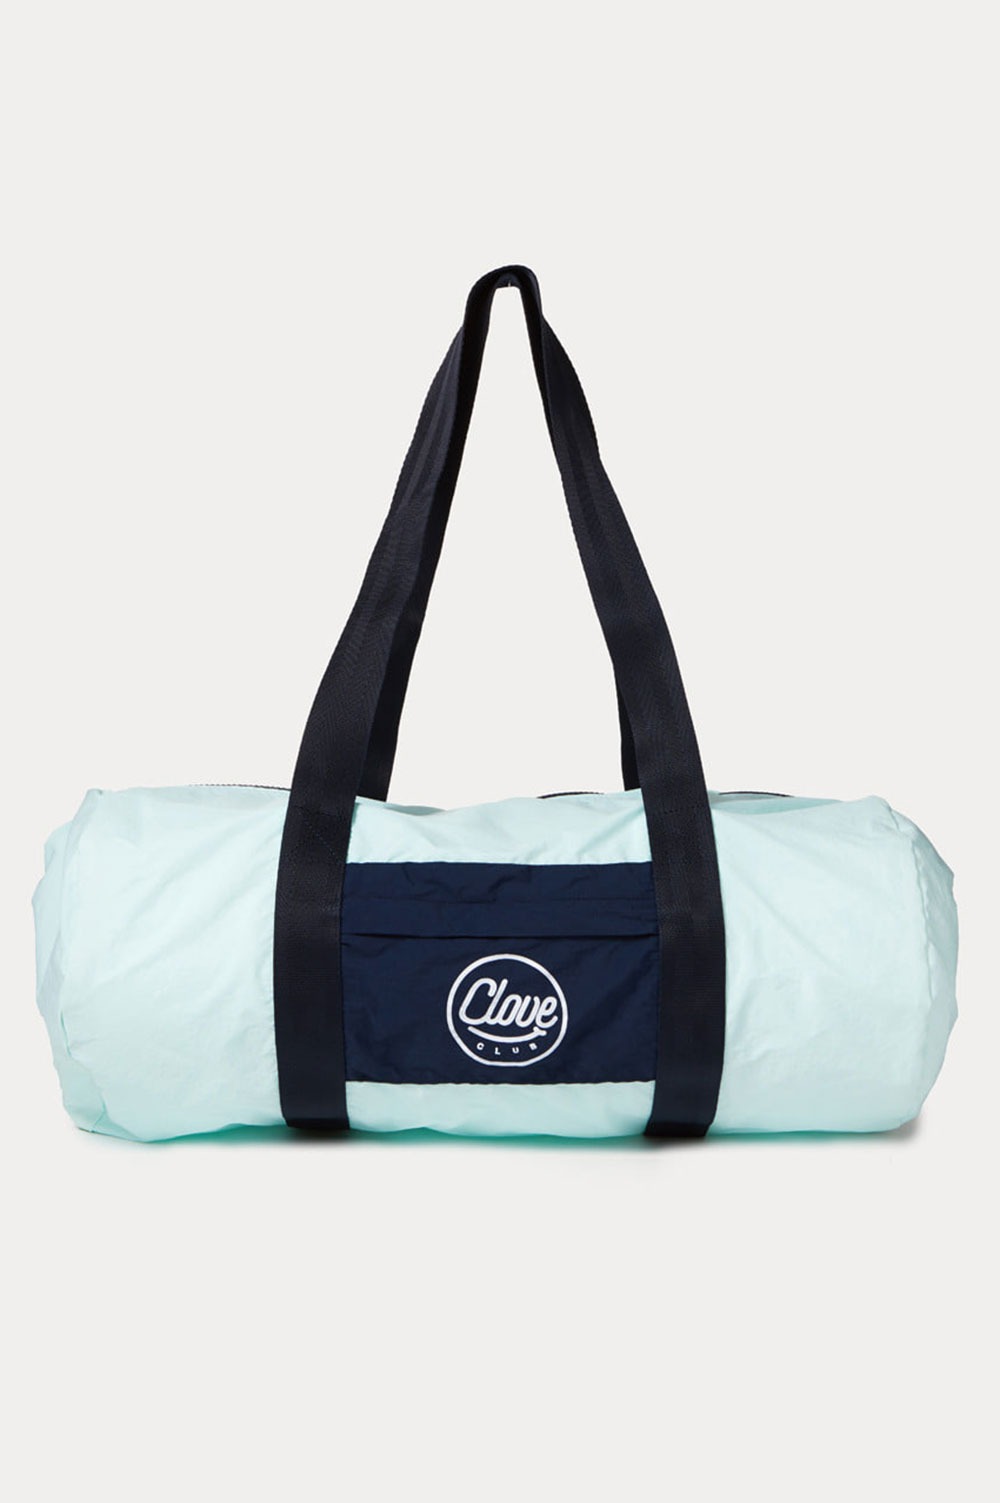 clove -  Light Duffle Bag (Blue)